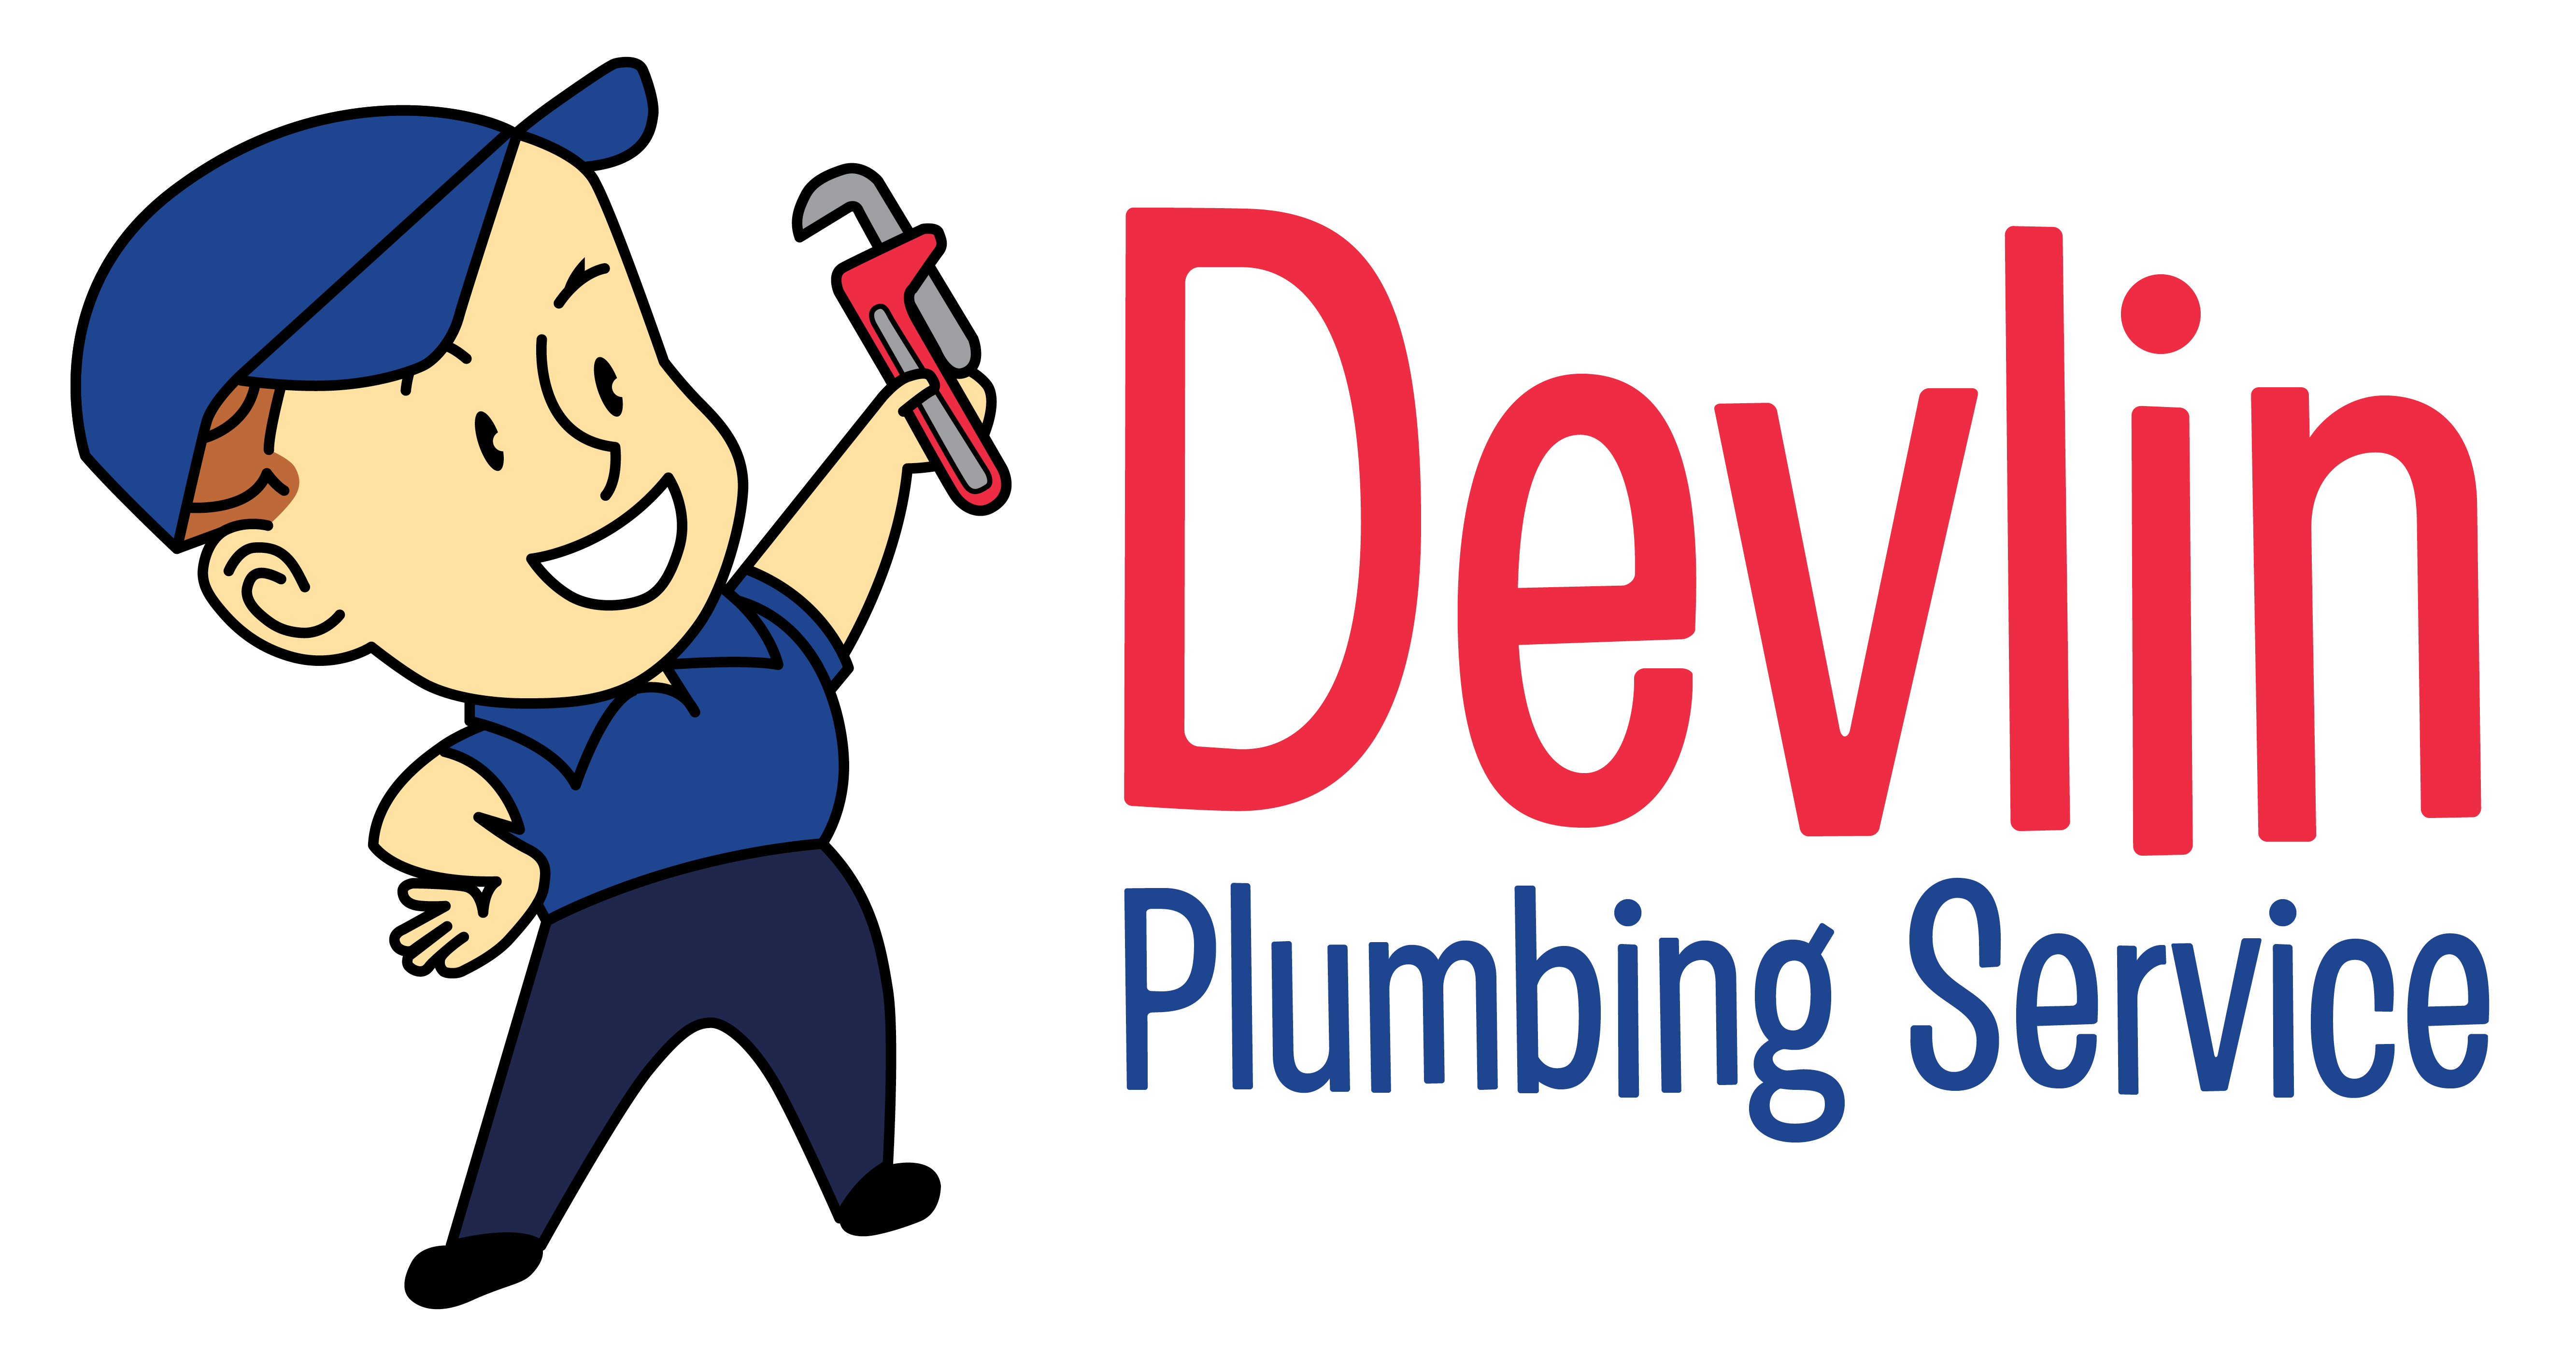 Devlin Plumbing Service